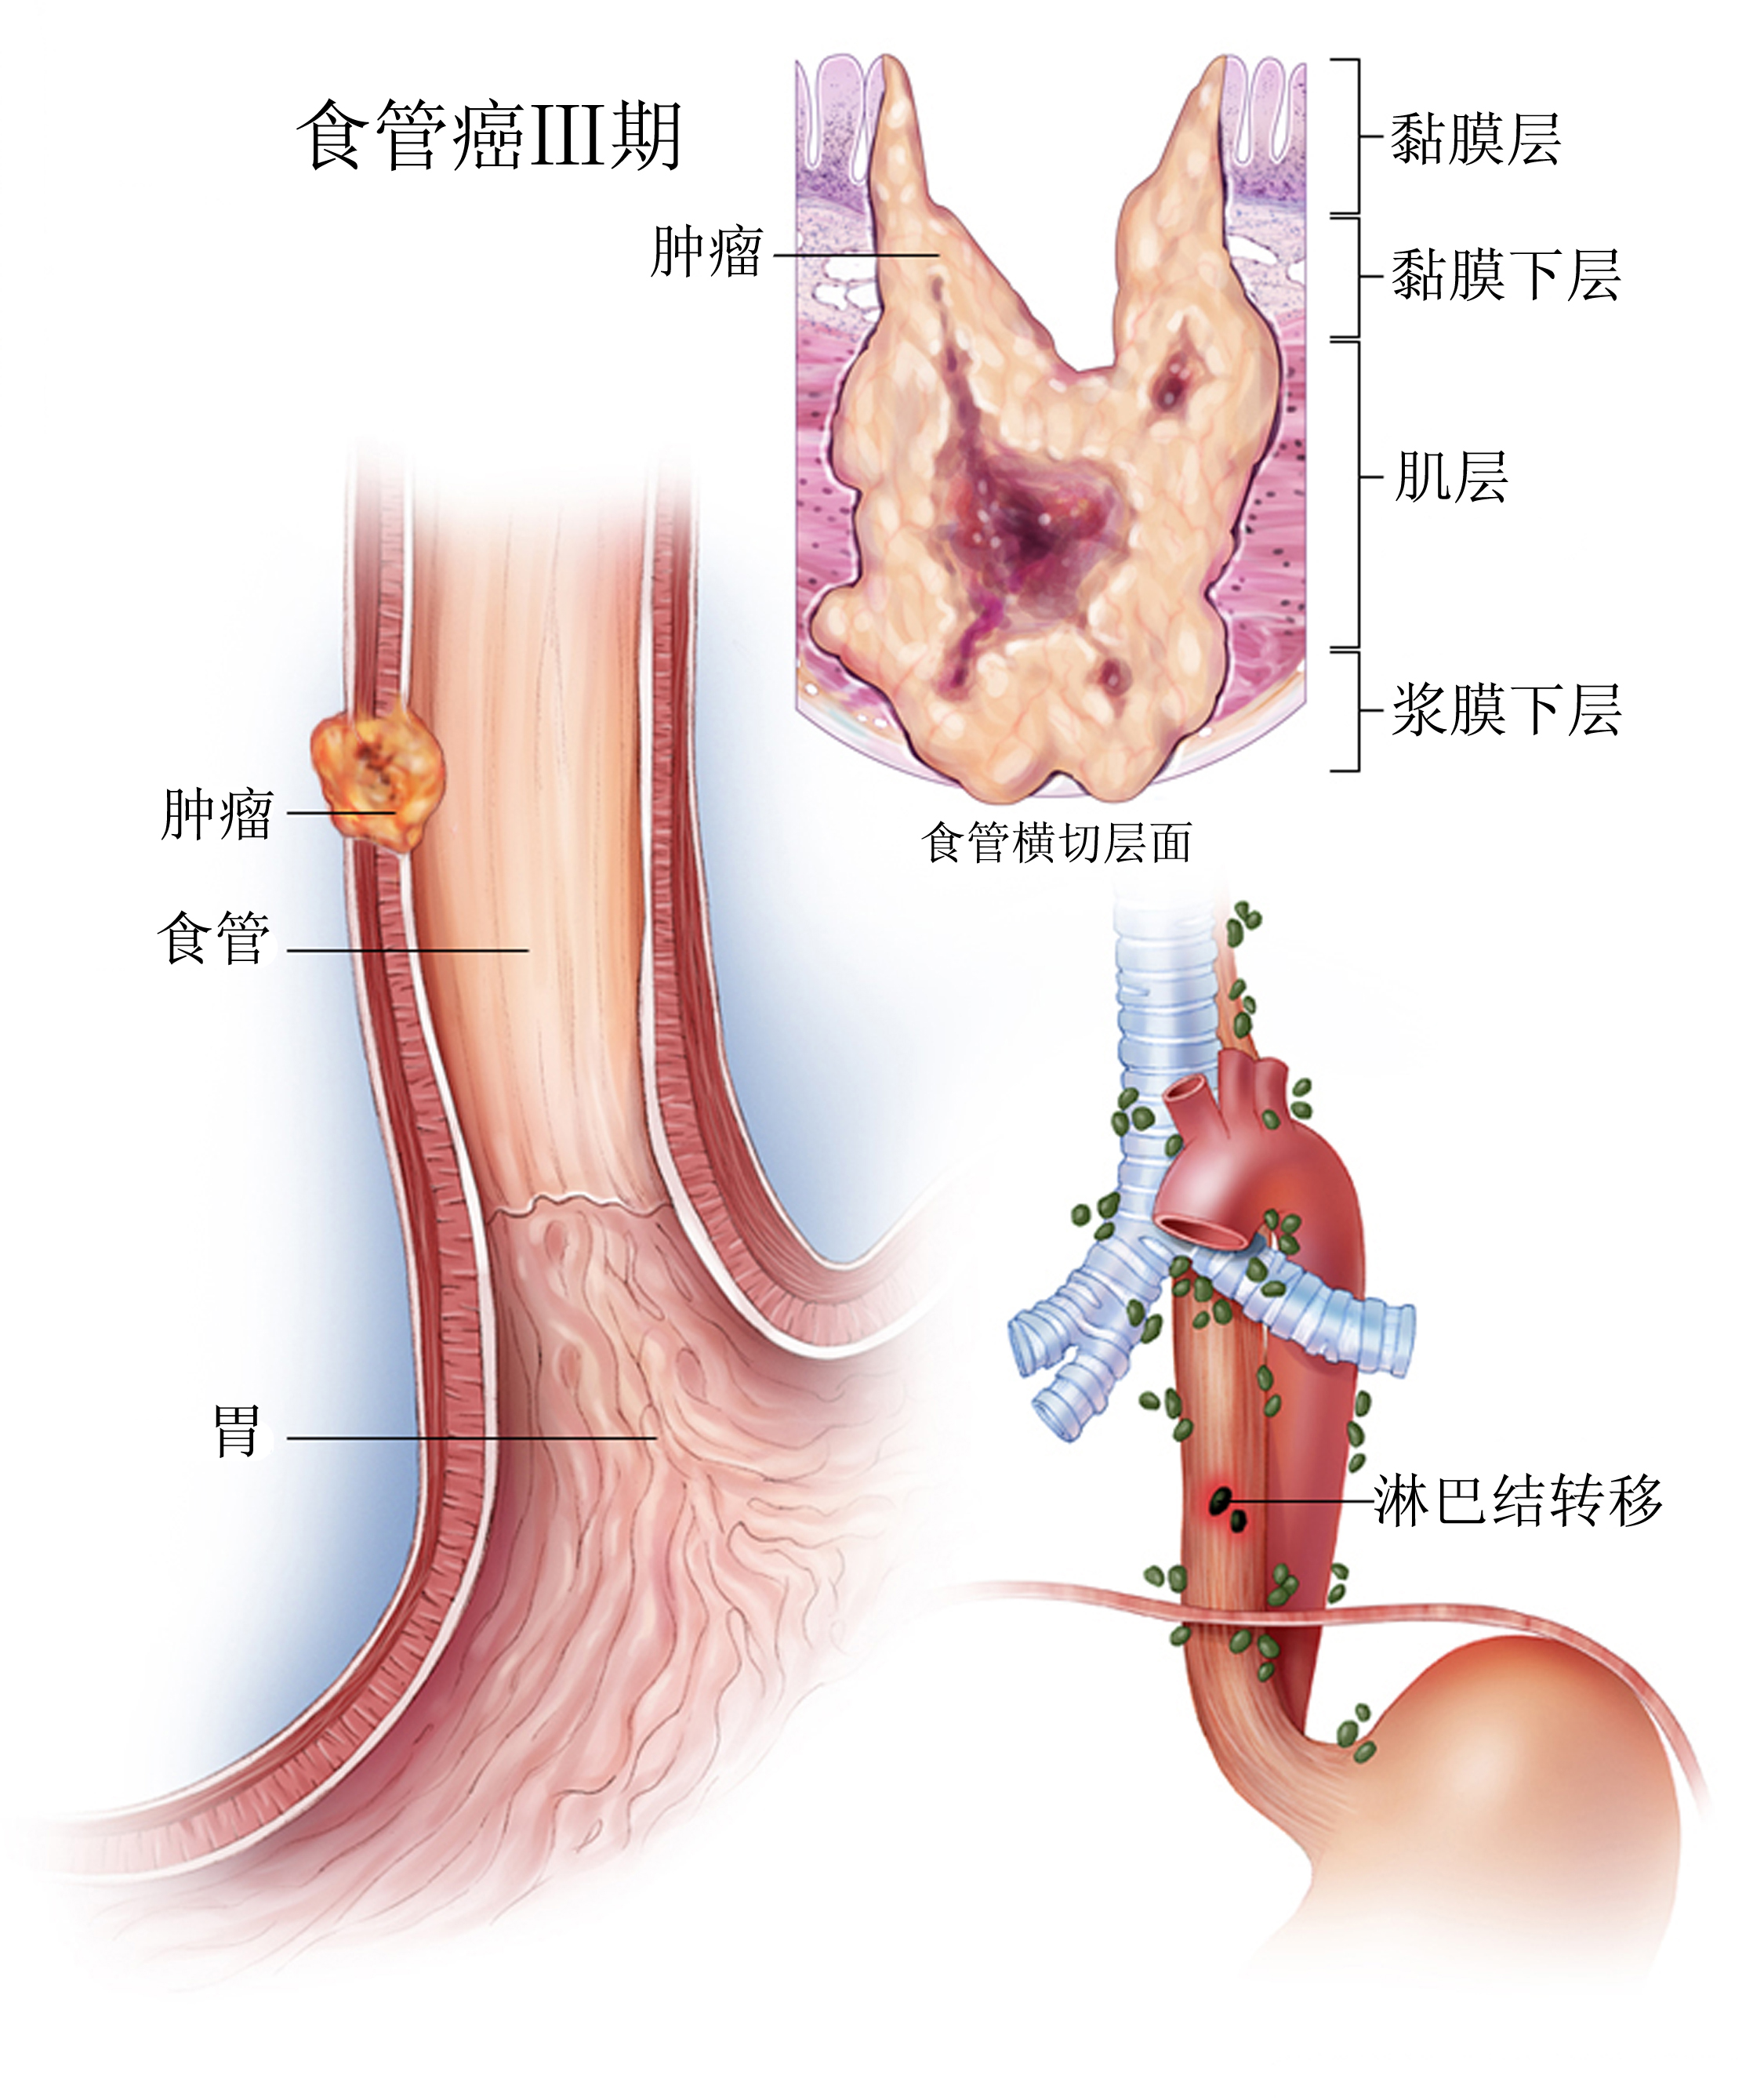 食管癌 (图文,科学普及版)